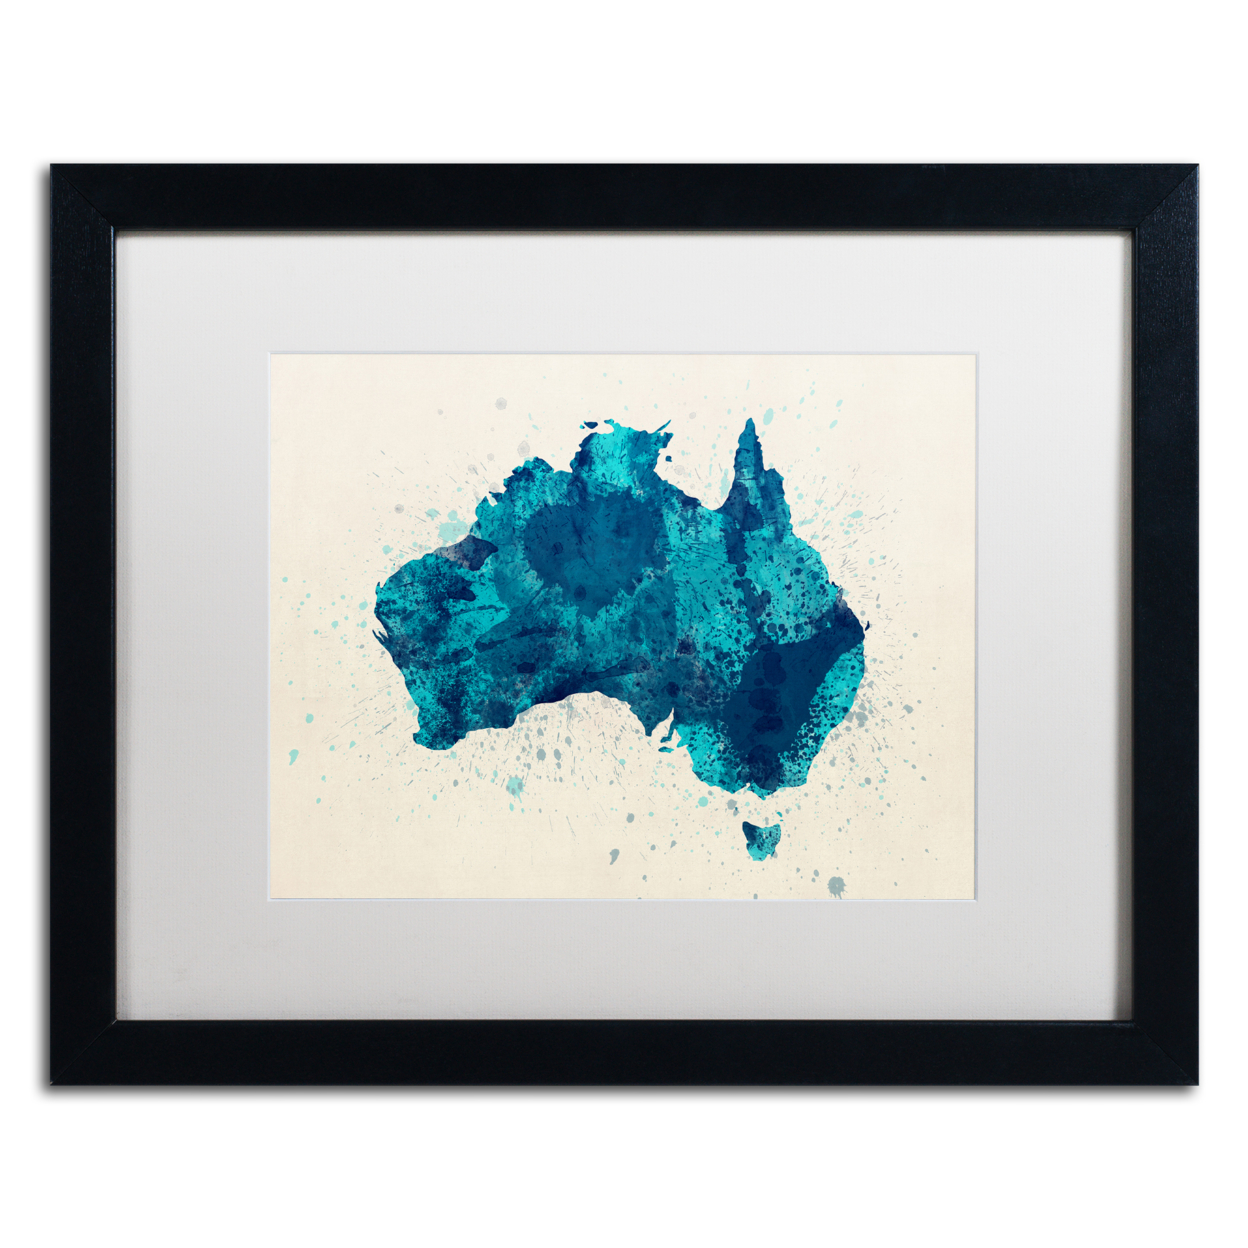 Michael Tompsett 'Australia Paint Splashes Map 2' Black Wooden Framed Art 18 X 22 Inches